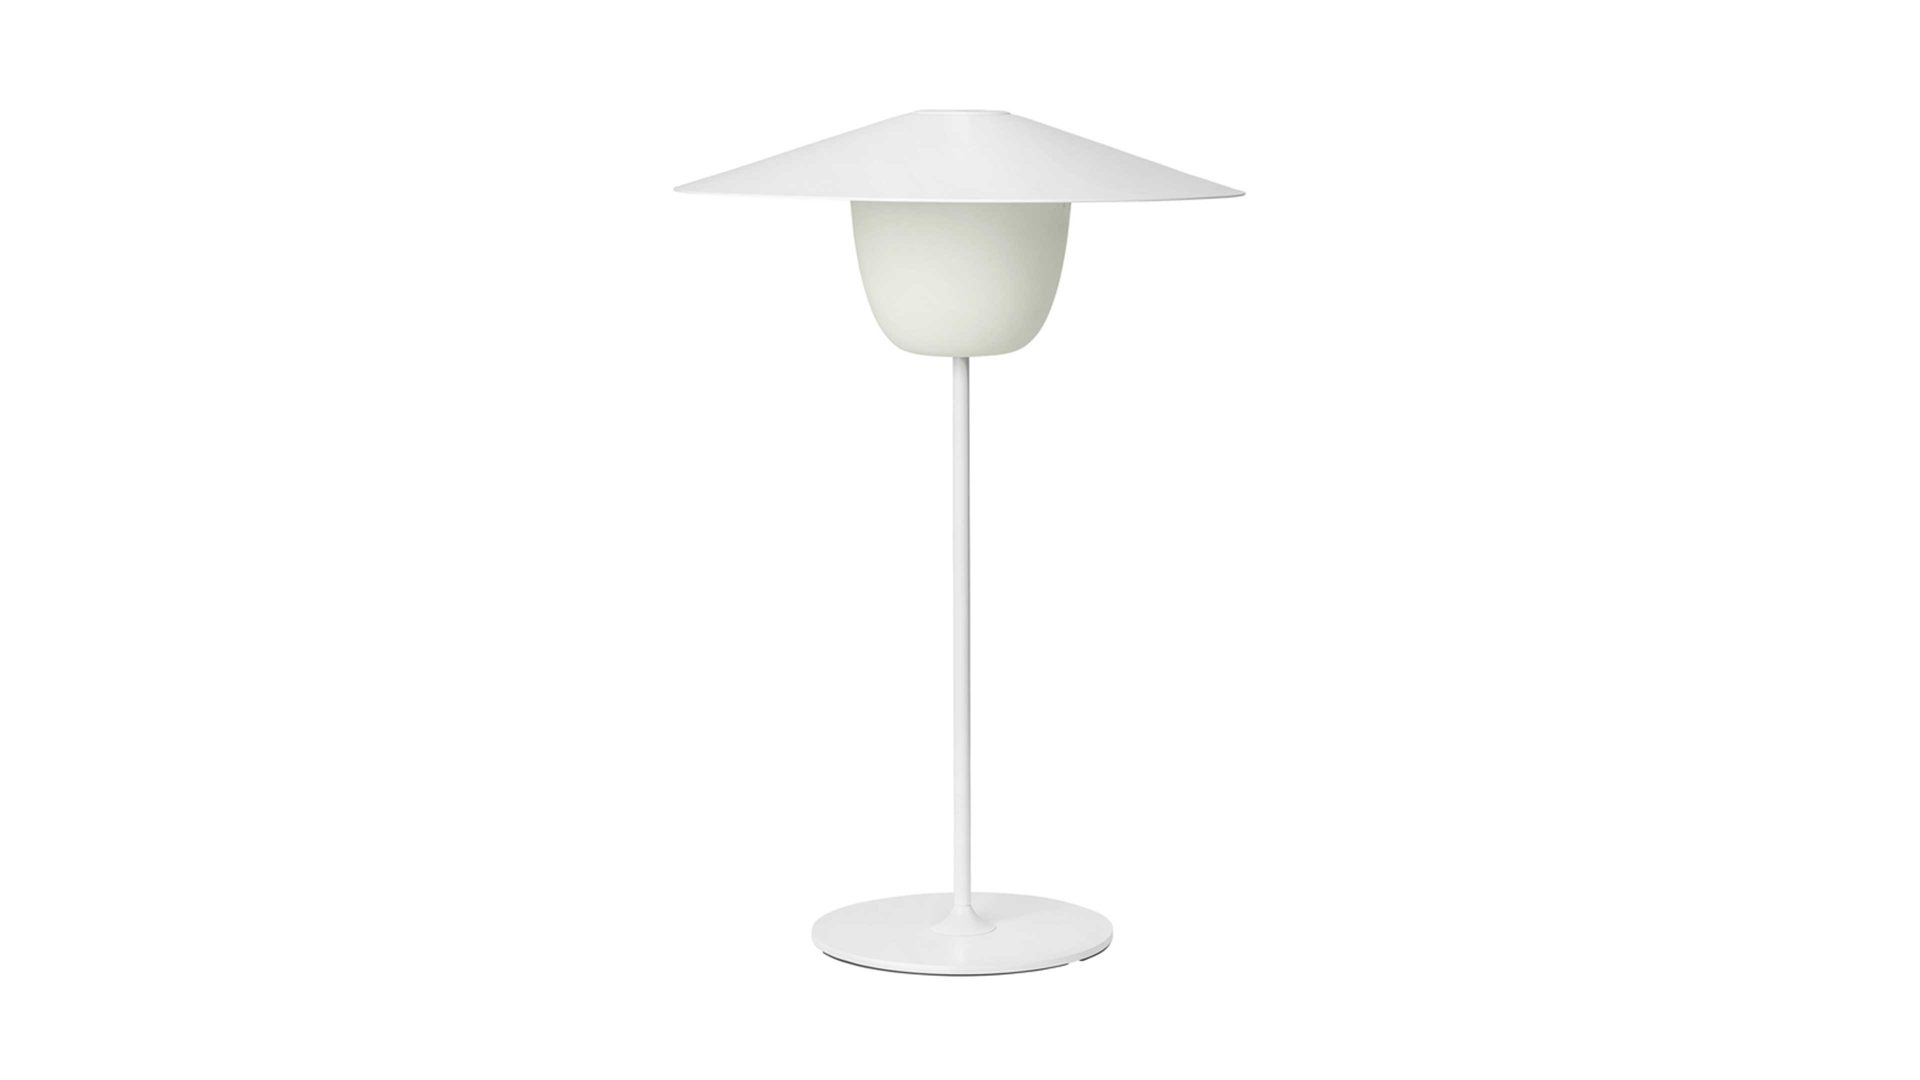 Tischleuchte Blomus aus Metall in Weiß blomus mobile Leuchte Ani Lamp weißes Aluminium & Milchglas – Durchmesser ca. 34 cm